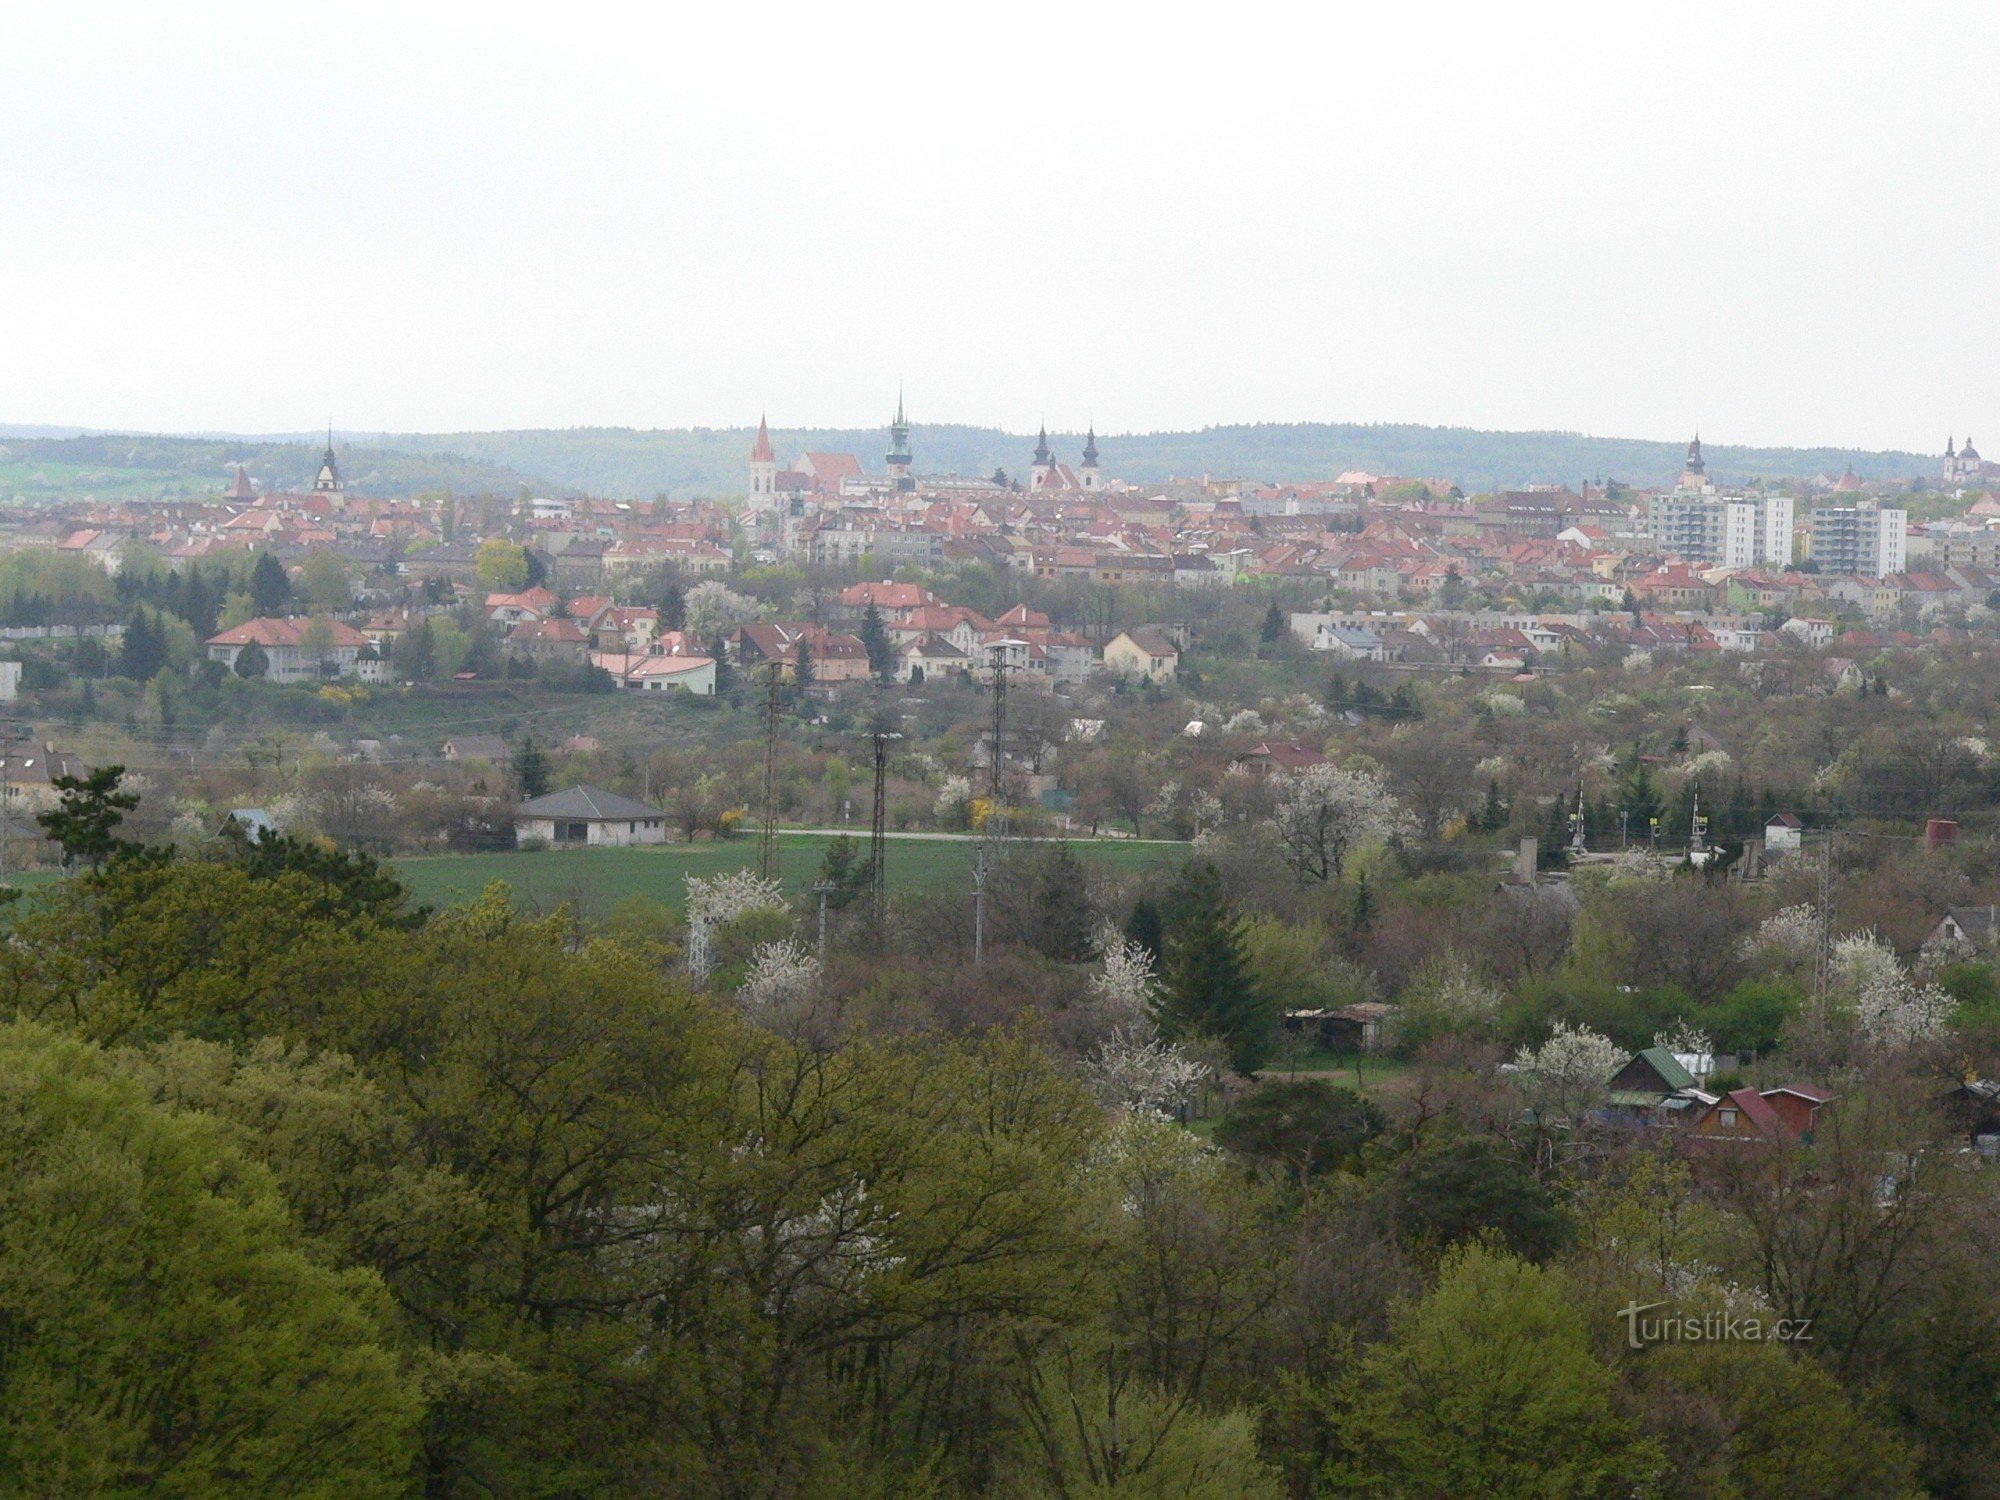 Un nou punct de observație pe dealul Hájek din Znojmo.